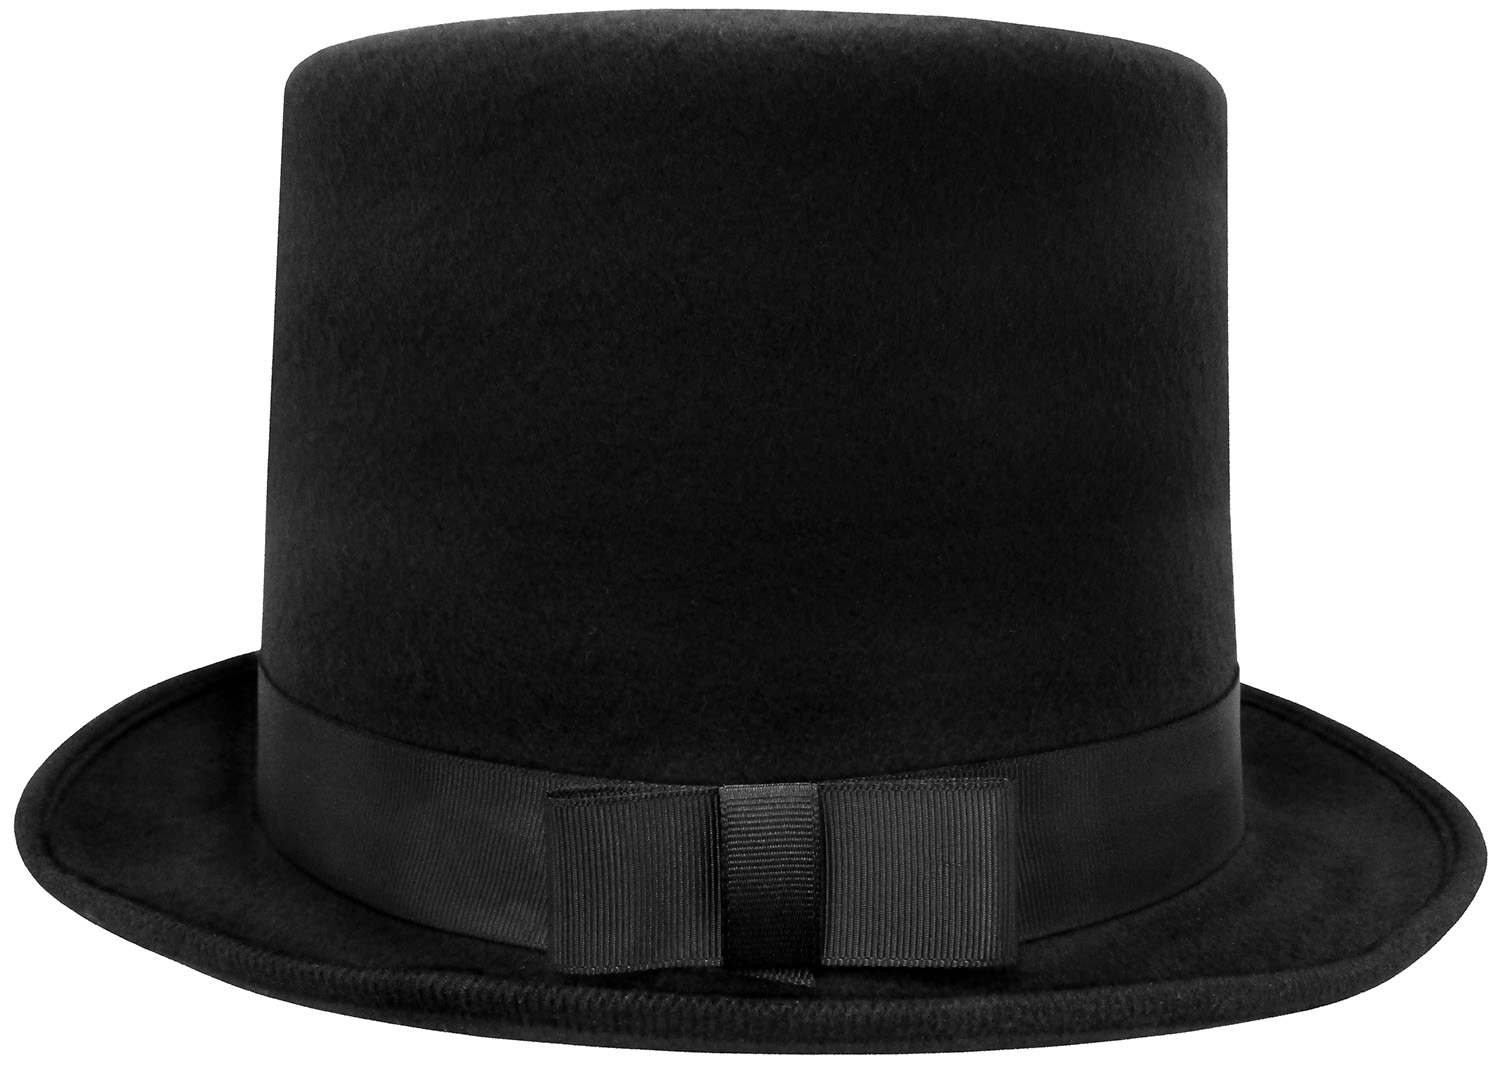 Top Hat Black Pressed Felt Dickens Era Victorian Gentleman's Costume Hat 